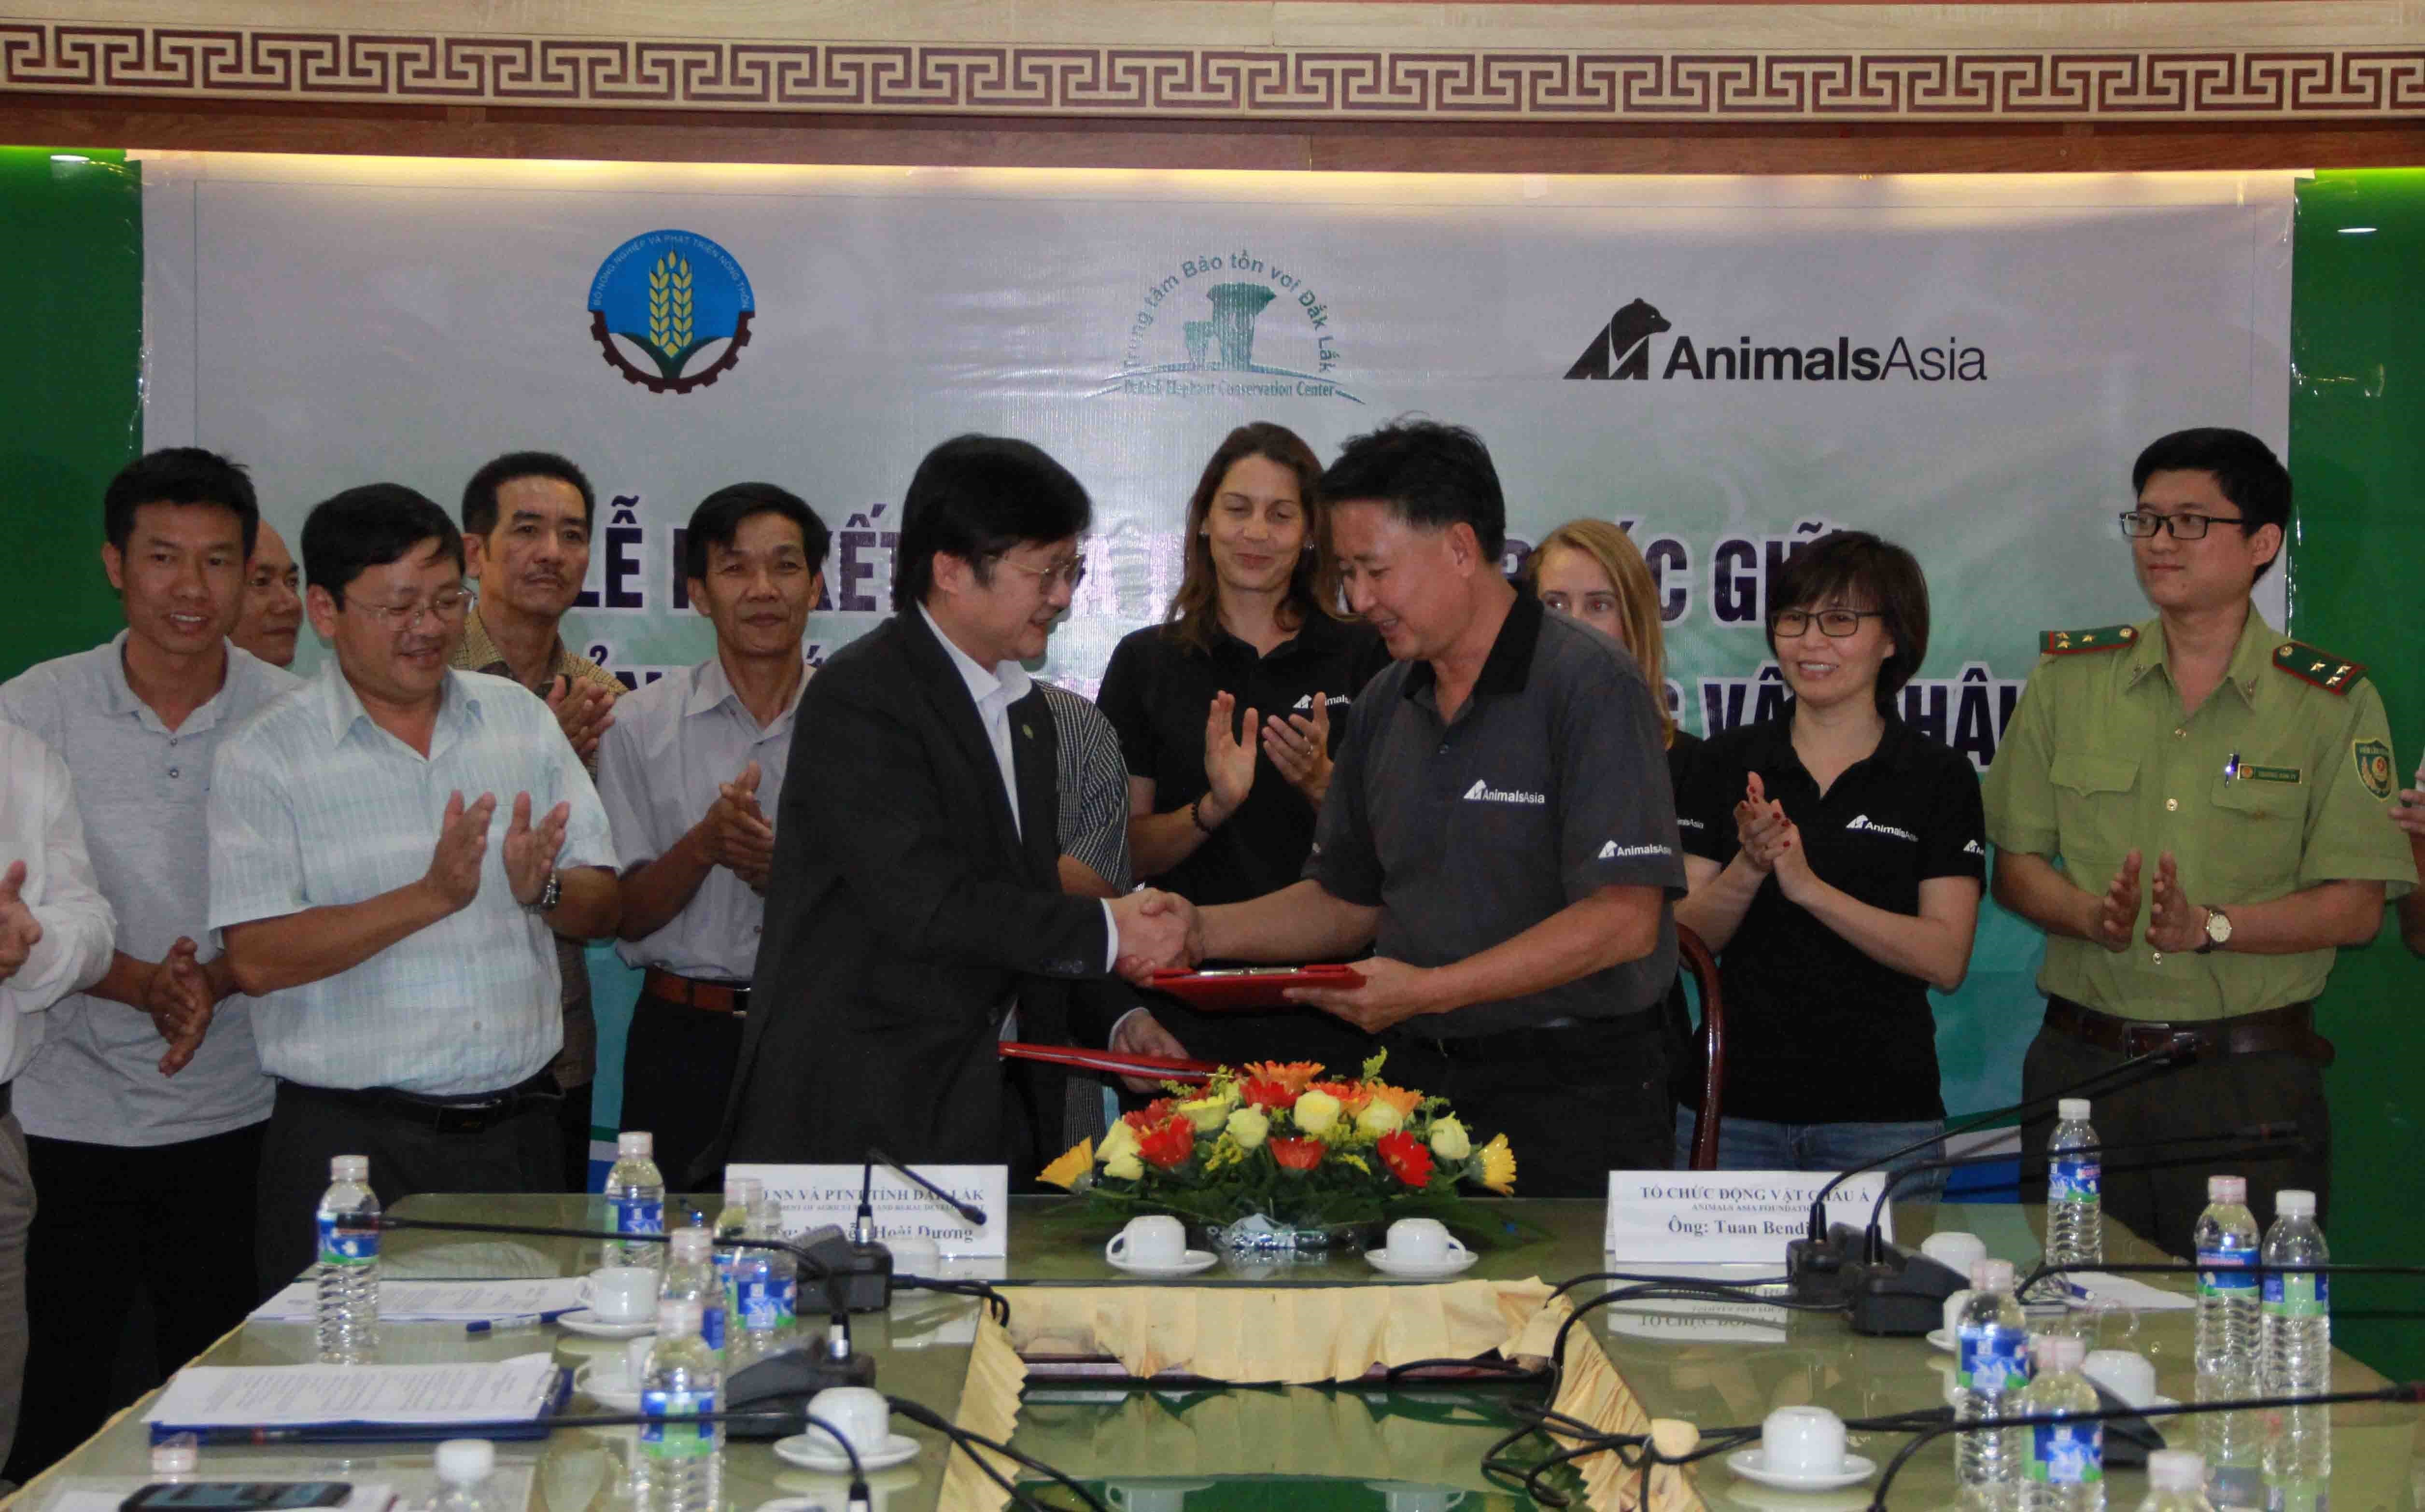 Đại diện Sở Nông nghiệp và Phát triển nông thôn tỉnh Đắk Lắk và đại diện Tổ chức Động vật Châu Á tại Việt Nam ký kết thỏa thuận bảo tồn voi ở Đắk Lắk giai đoạn 2019-2021 ngày 11/1/2019. (Ảnh: Phạm Cường/TTXVN)